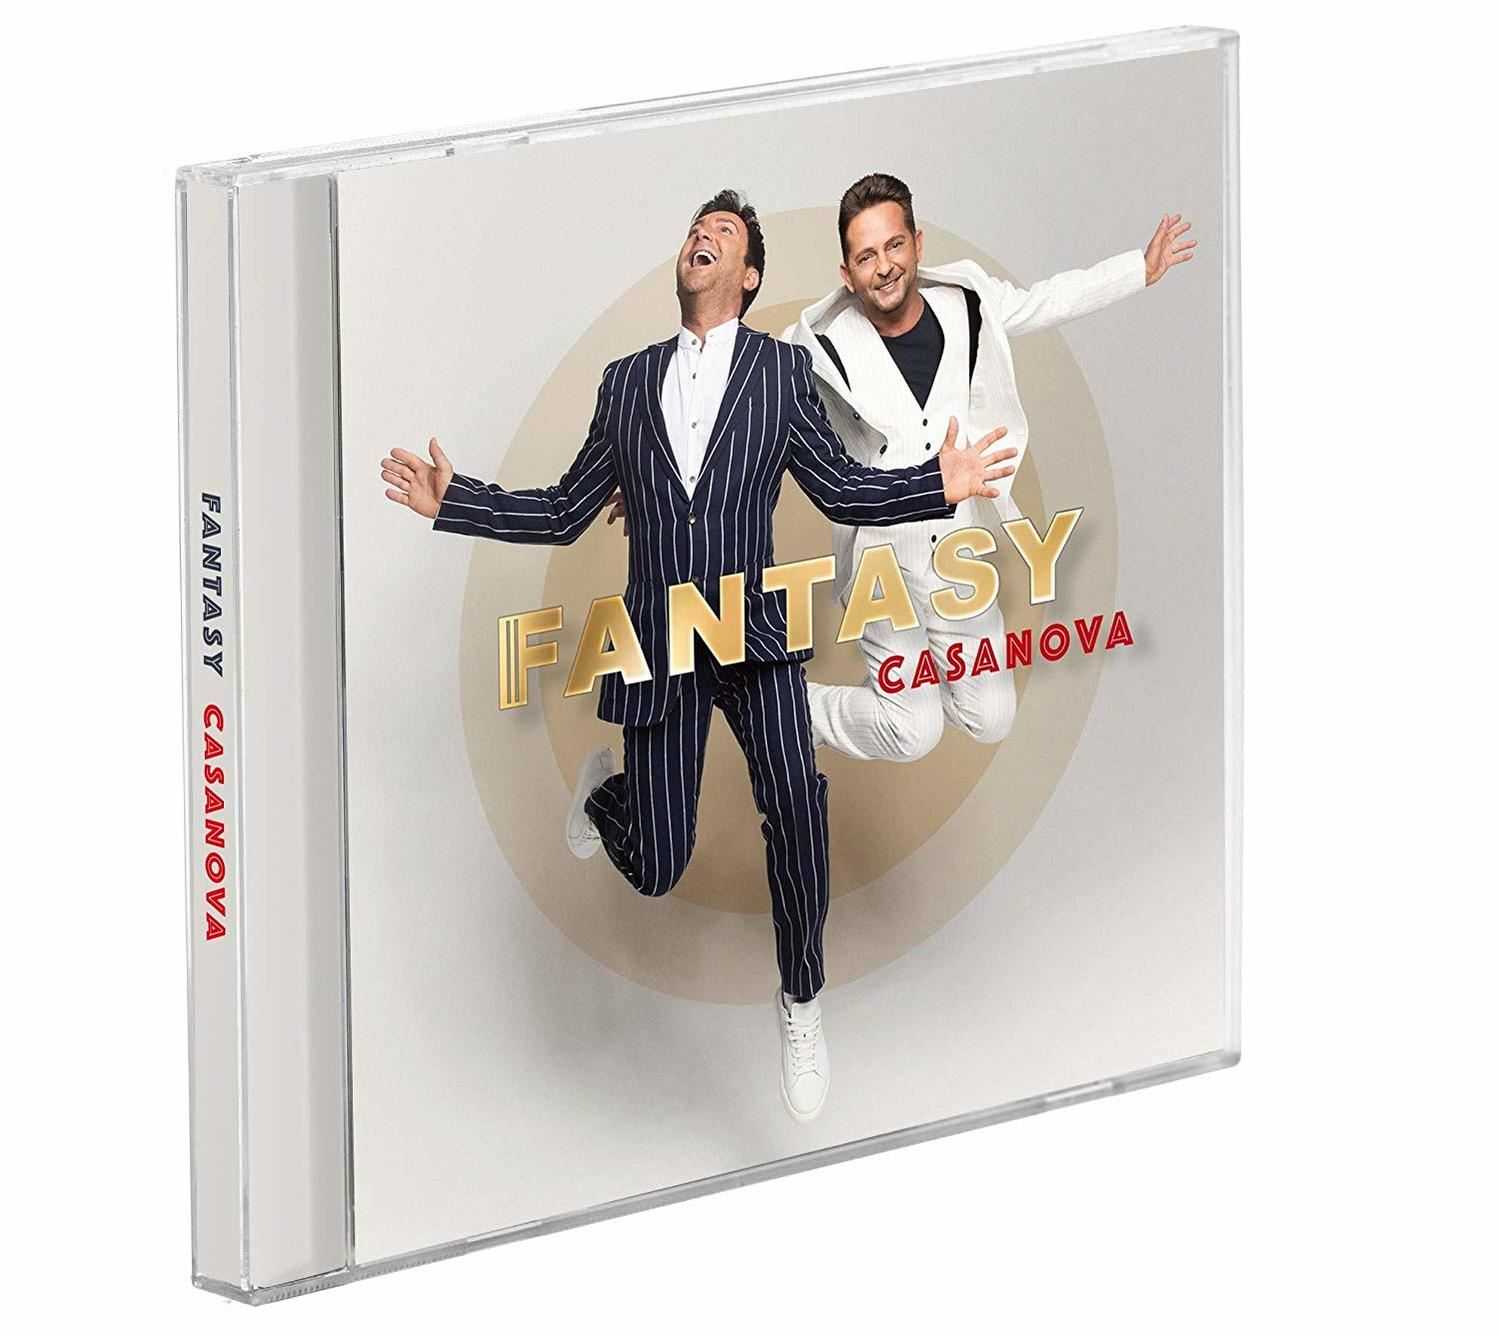 Fantasy - Casanova - (CD)